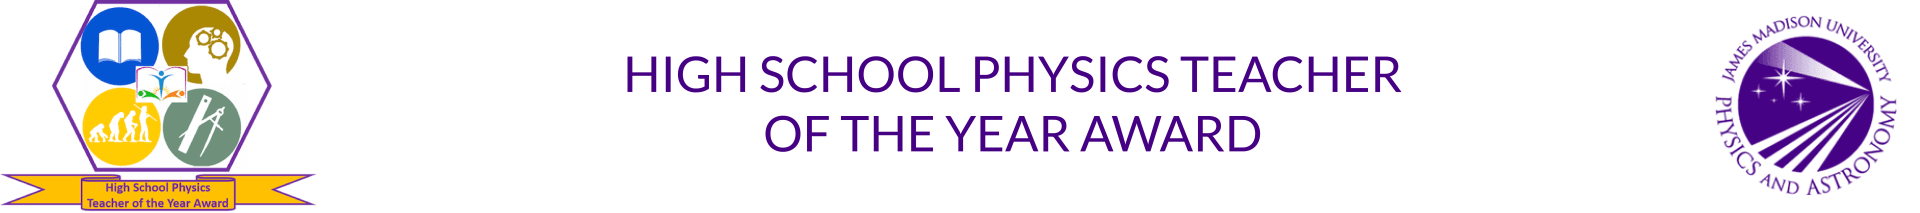 High School Physics Teacher of the Year Award